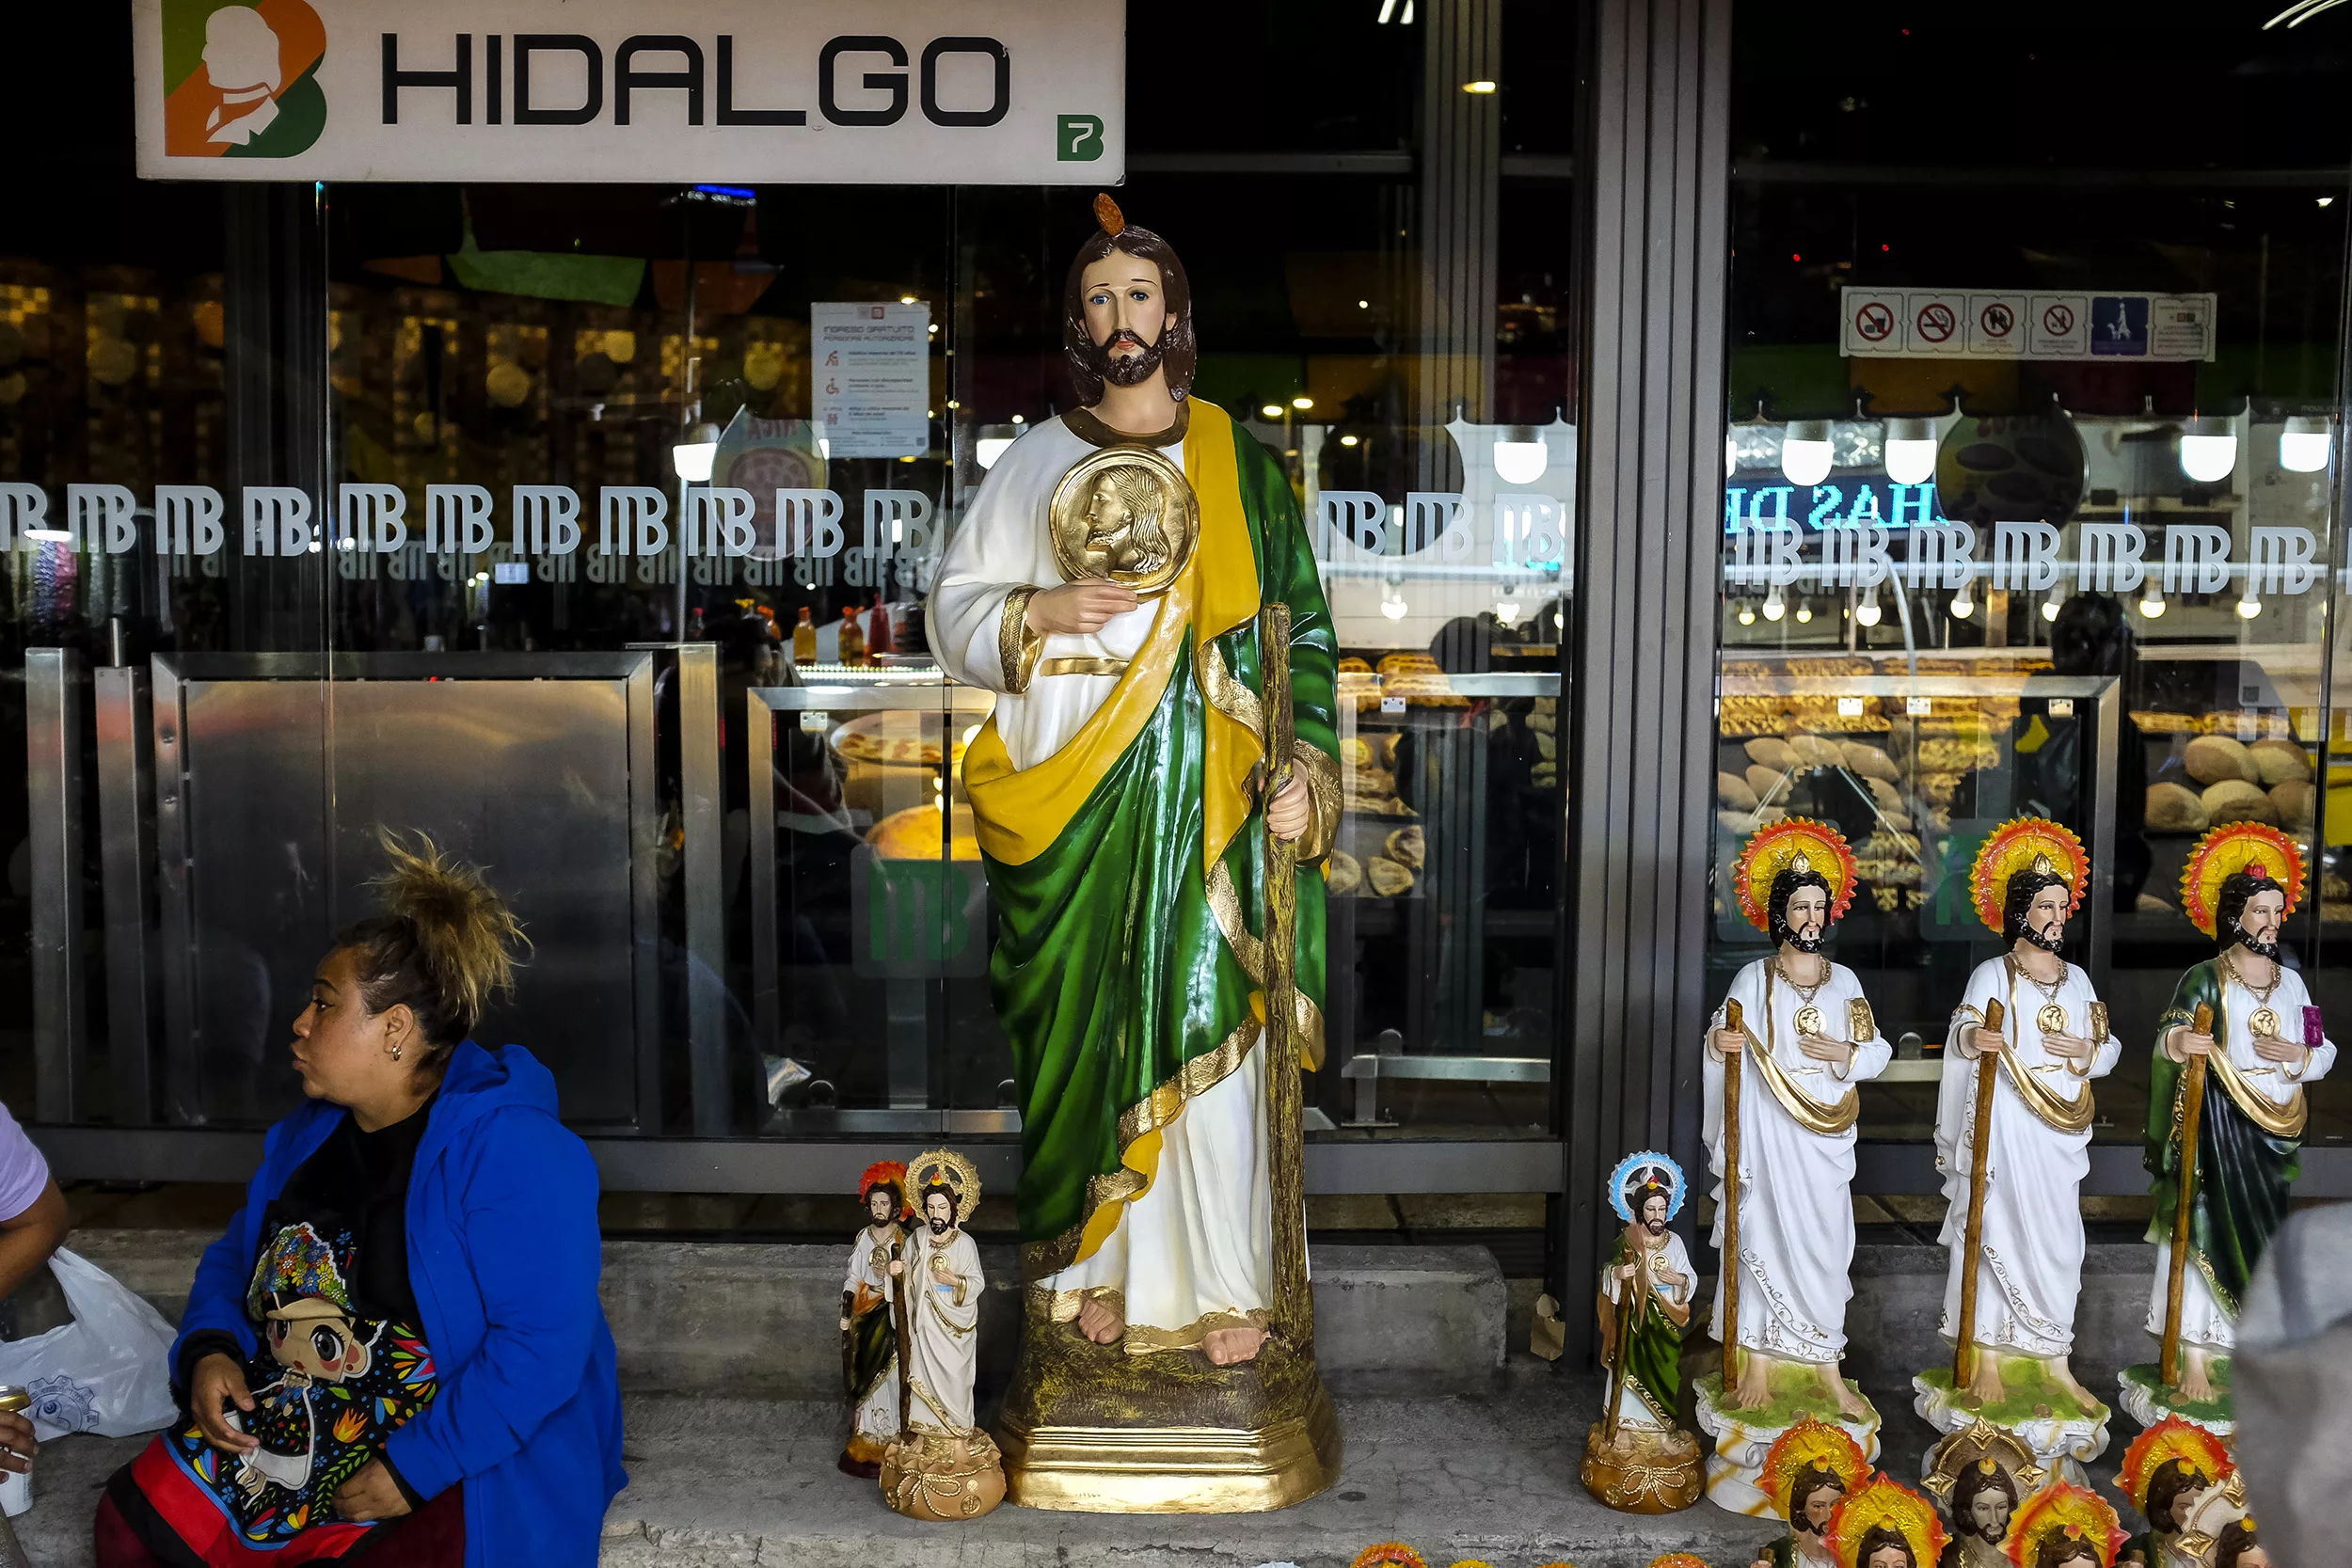 San Judas Tadeo: La fiesta de las causas imposibles en la Ciudad de México